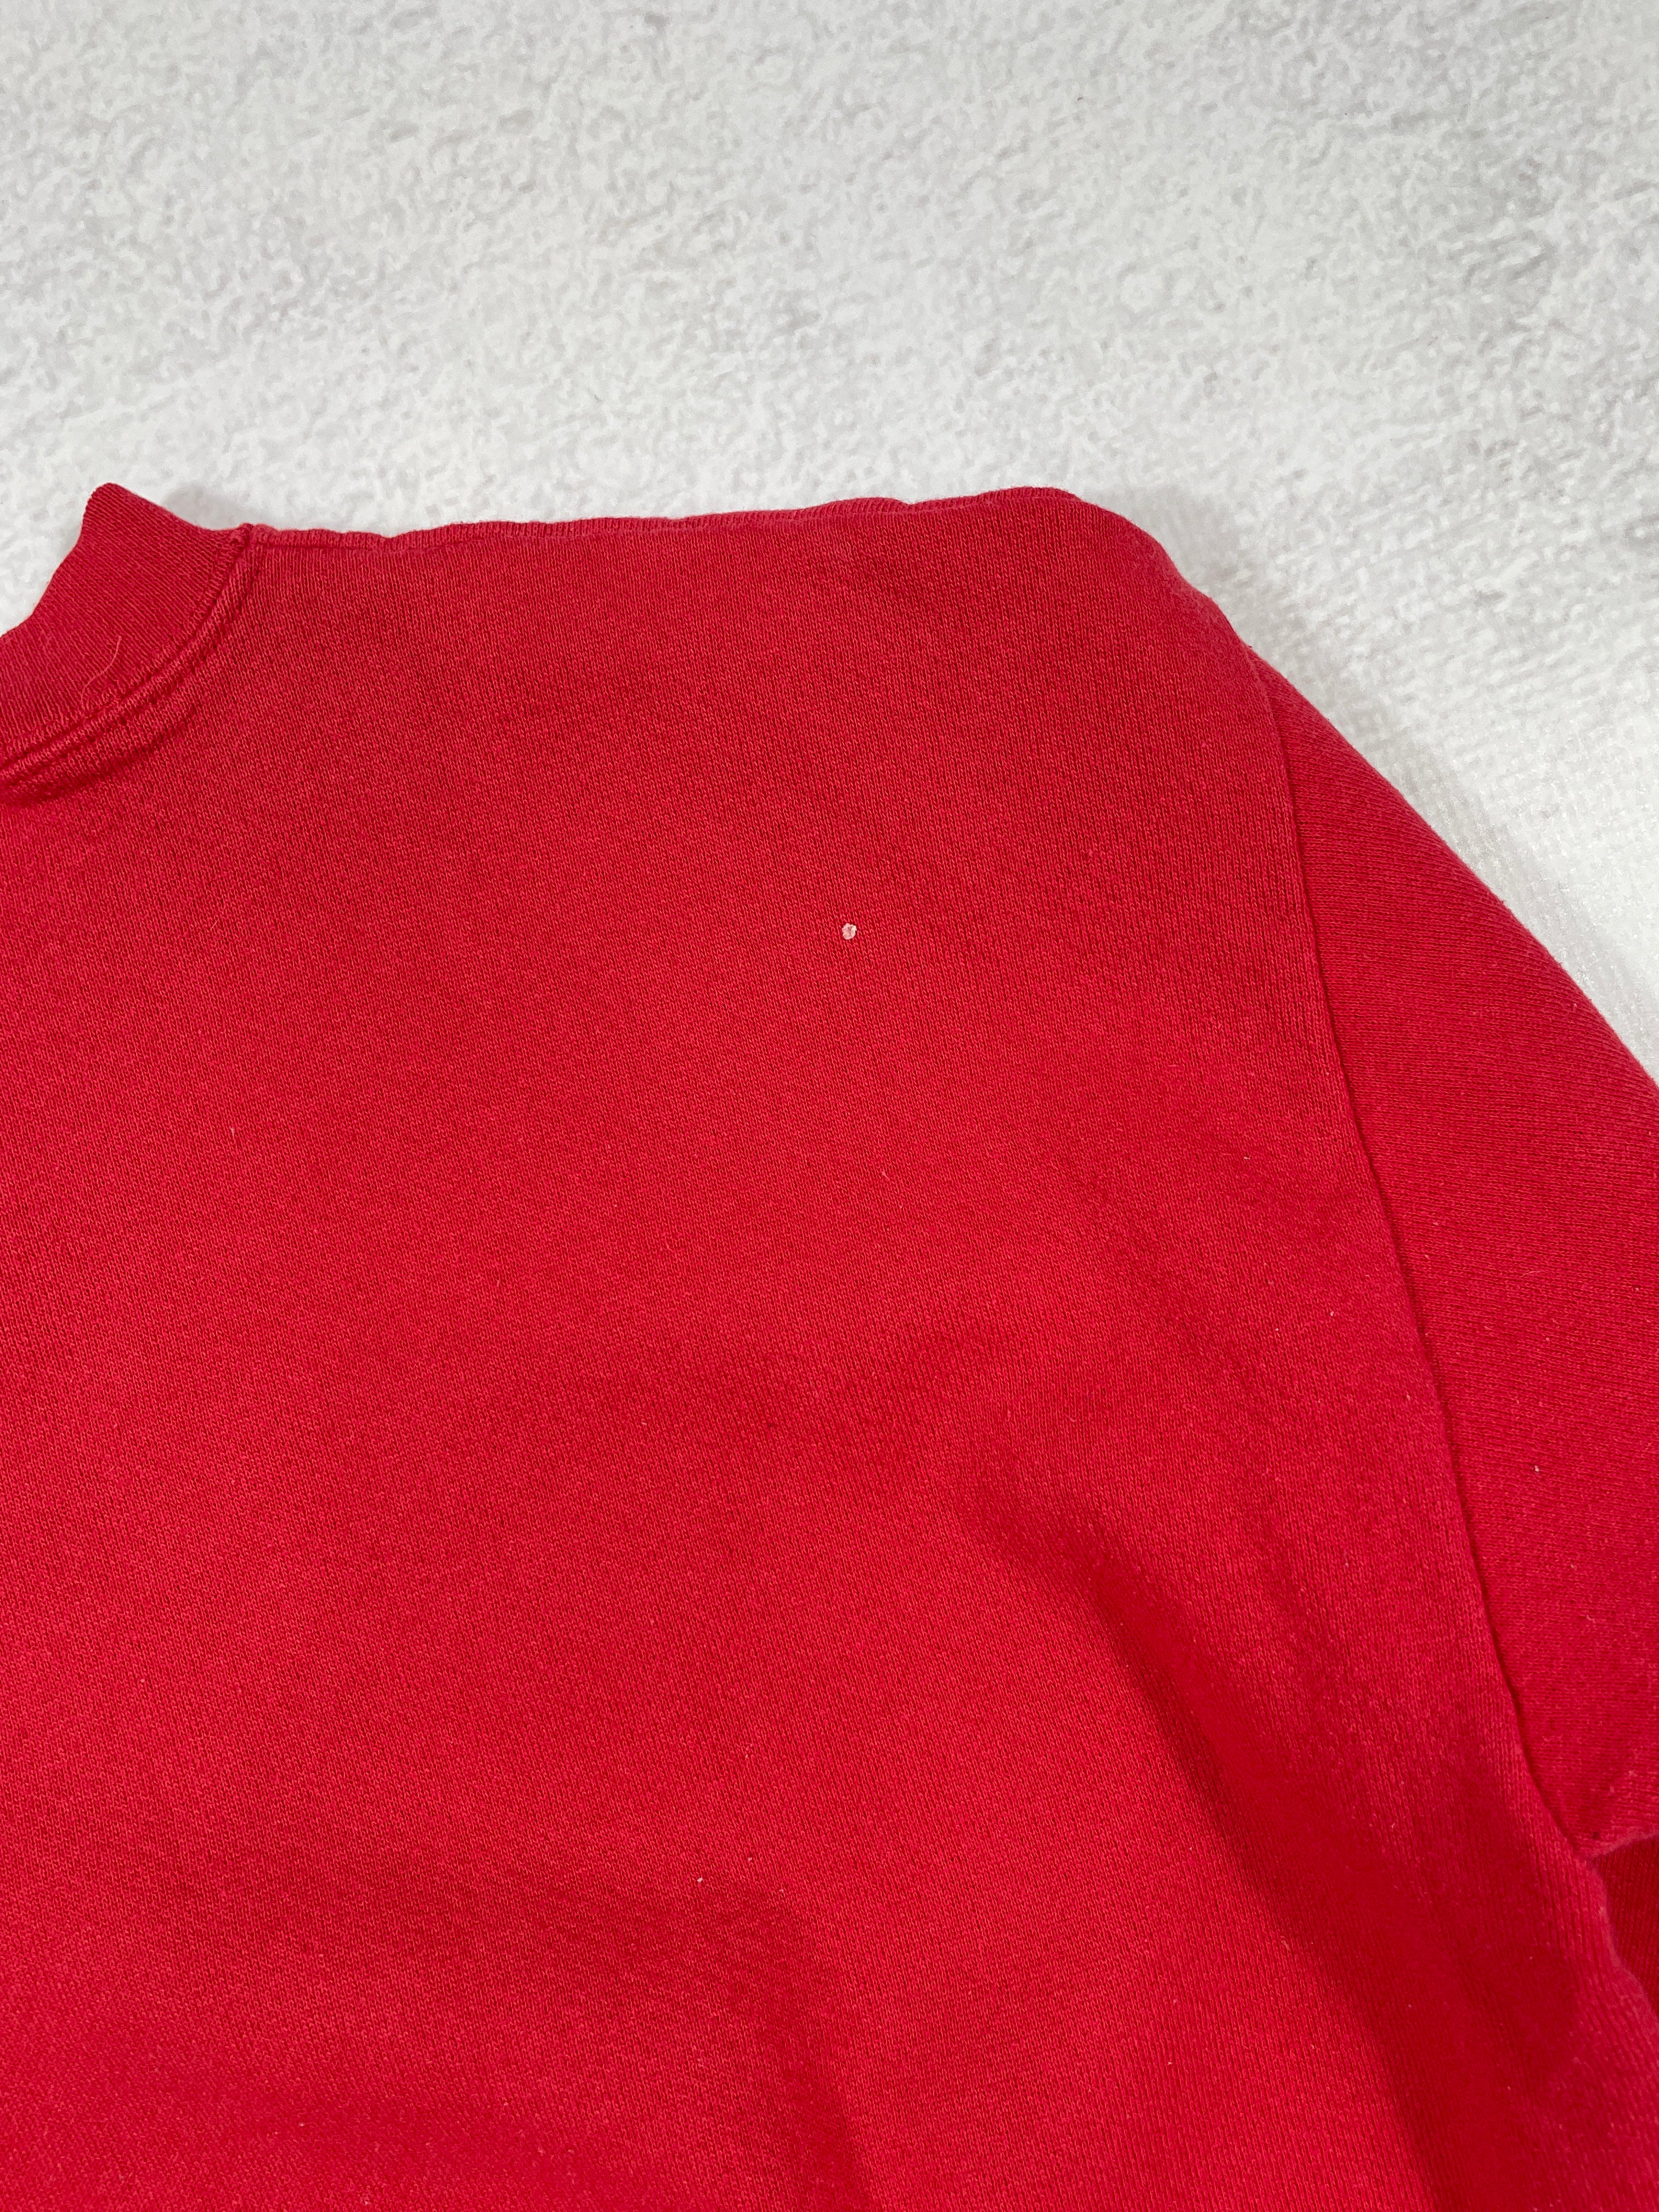 Vintage NHL Detroit Red Wings Crewneck Sweatshirt - Medium